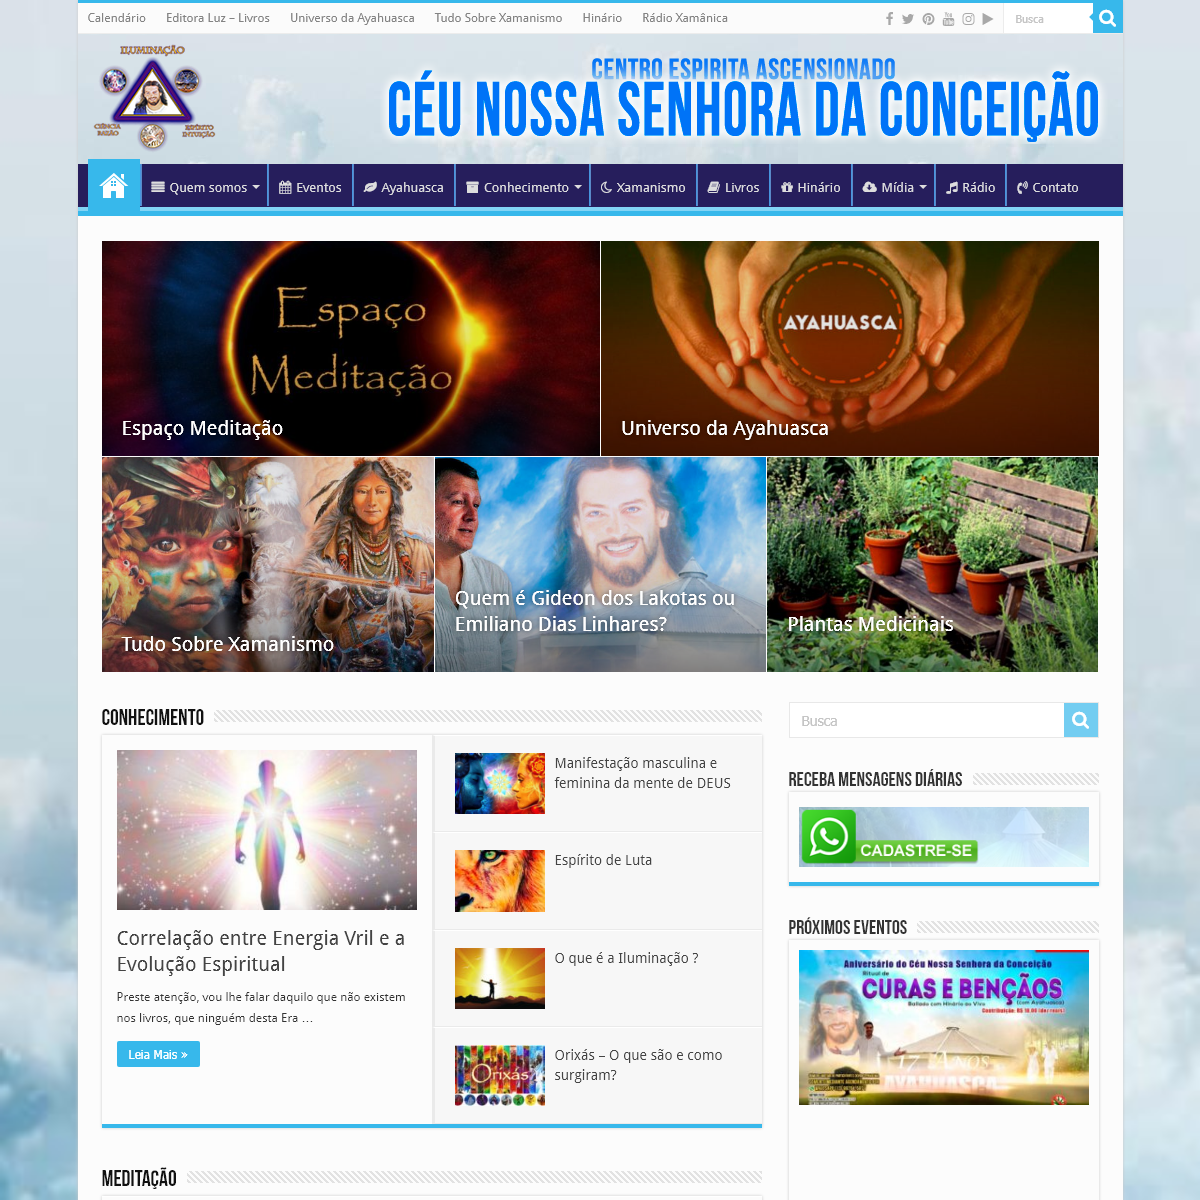 A complete backup of ceunossasenhoradaconceicao.com.br